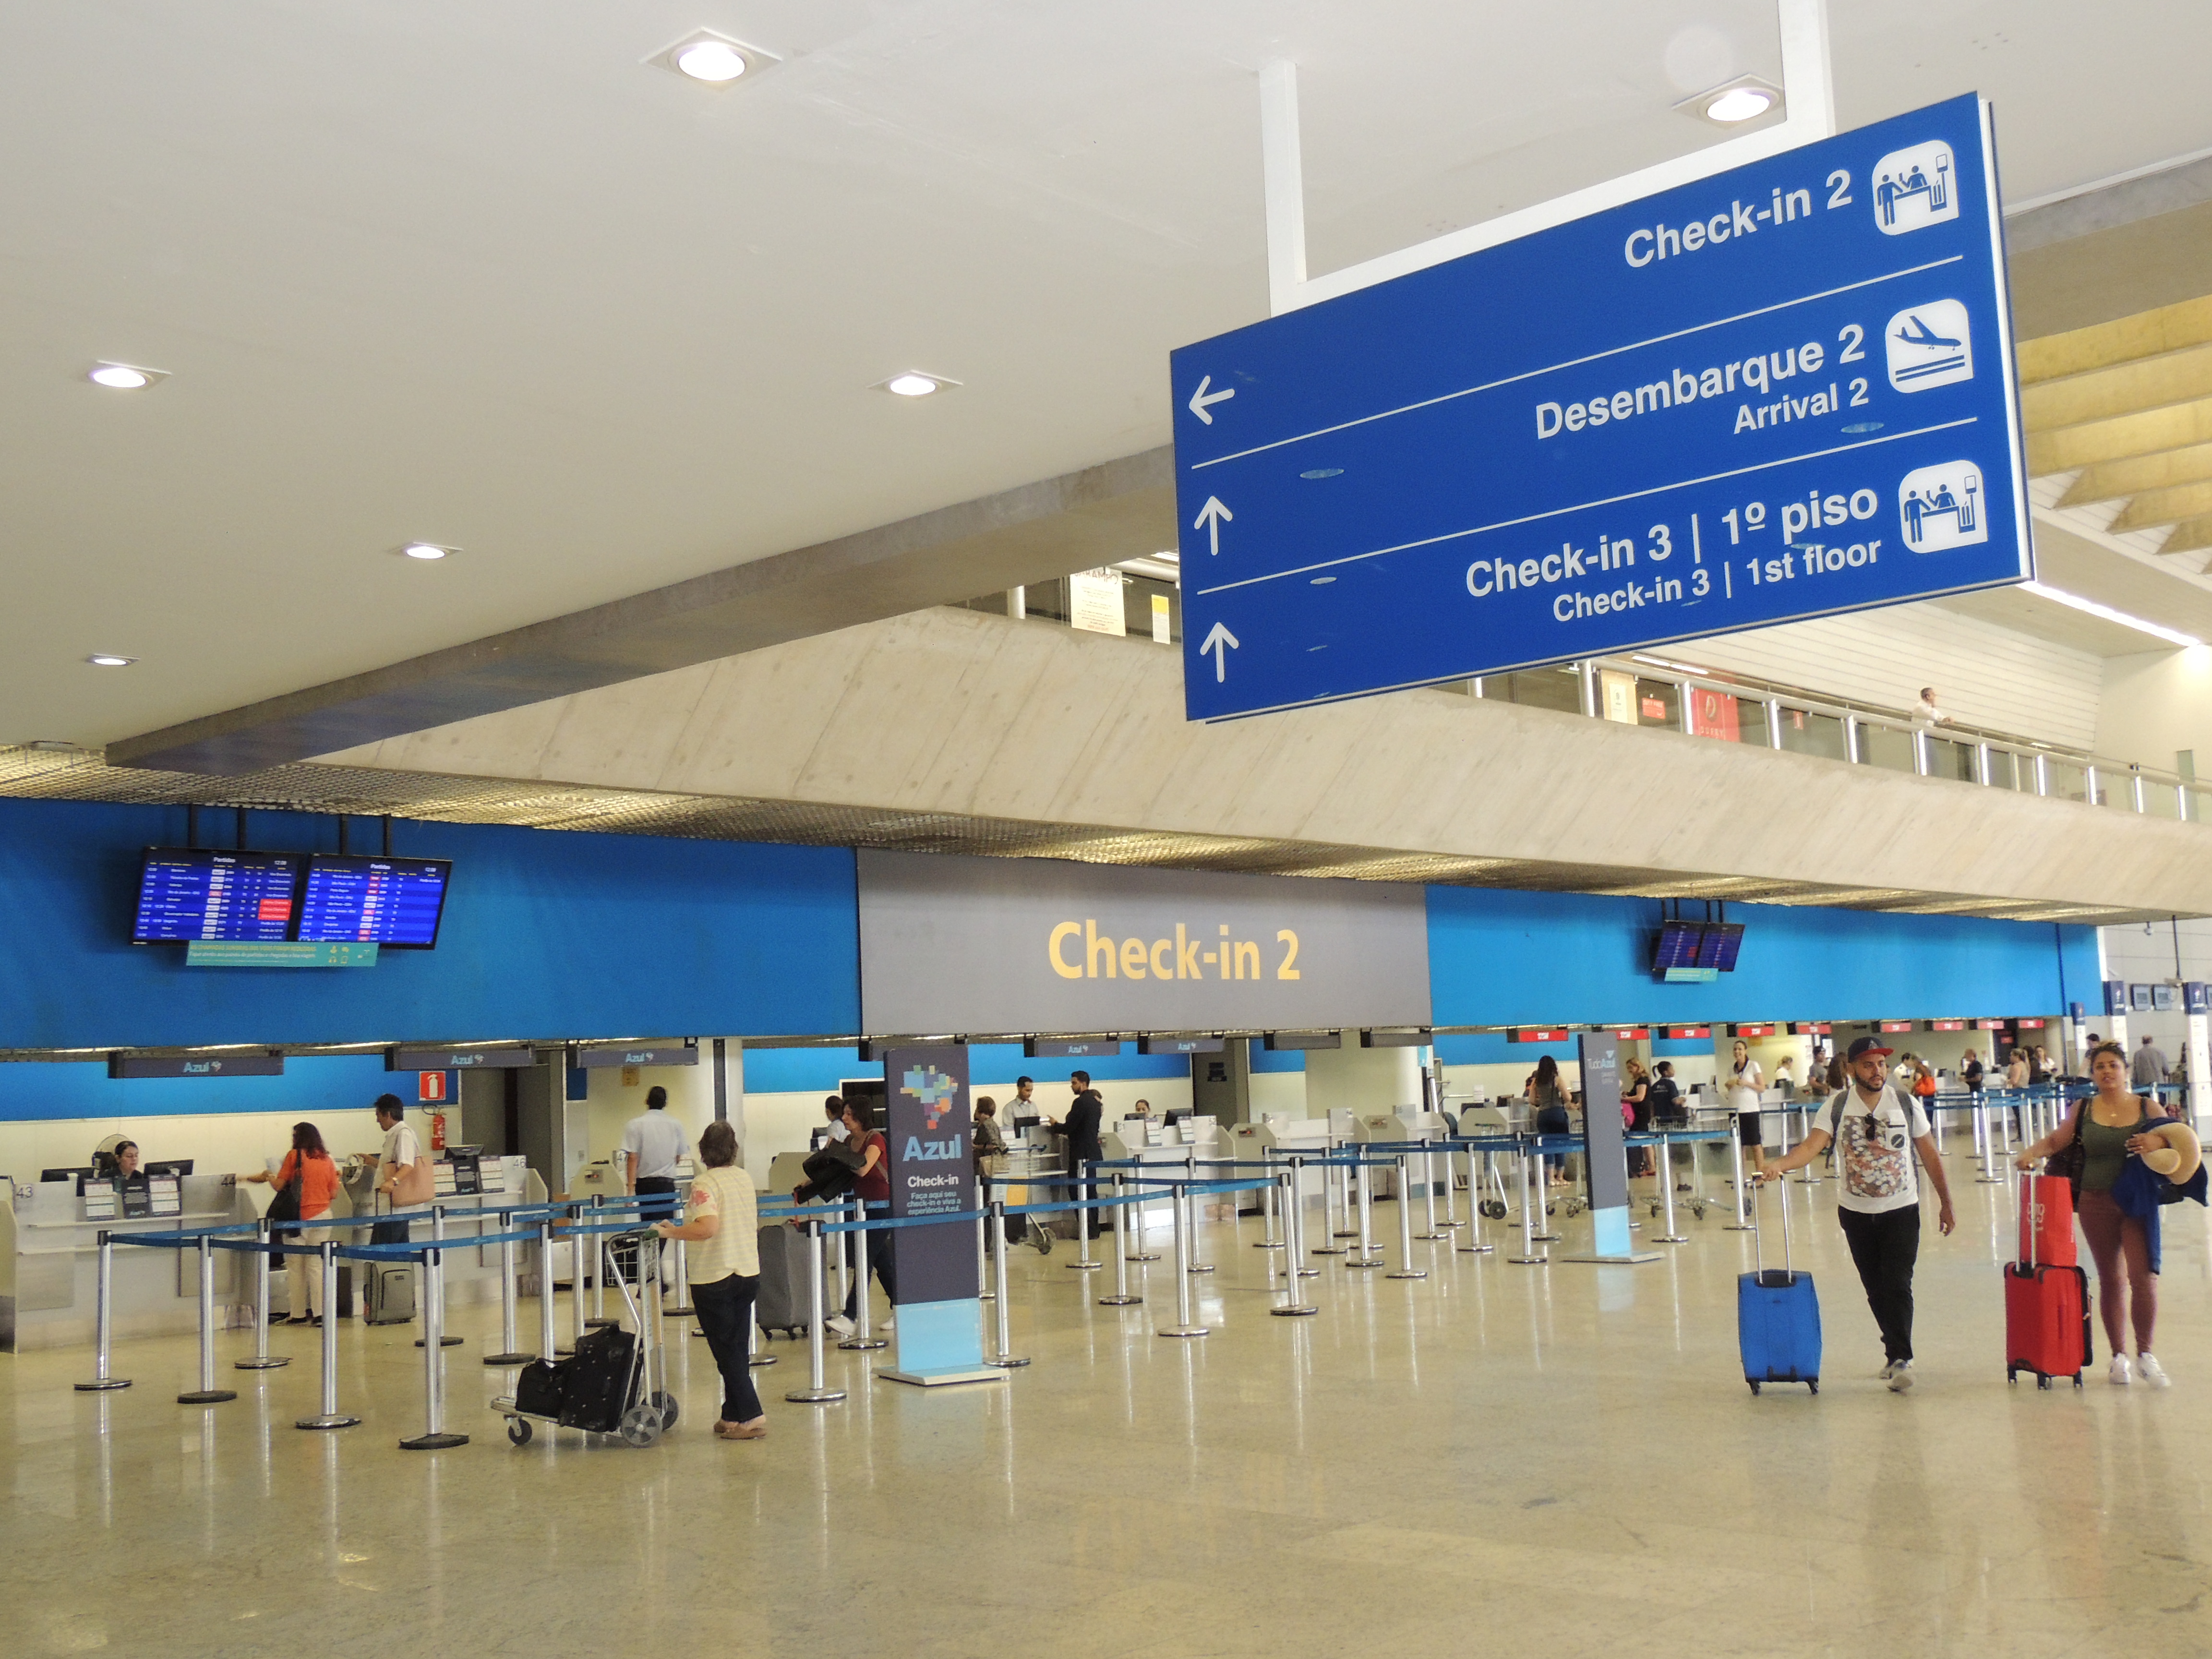 Aeroporto de Confins: viajantes precisam de segurança e confiança para circular entre destinos